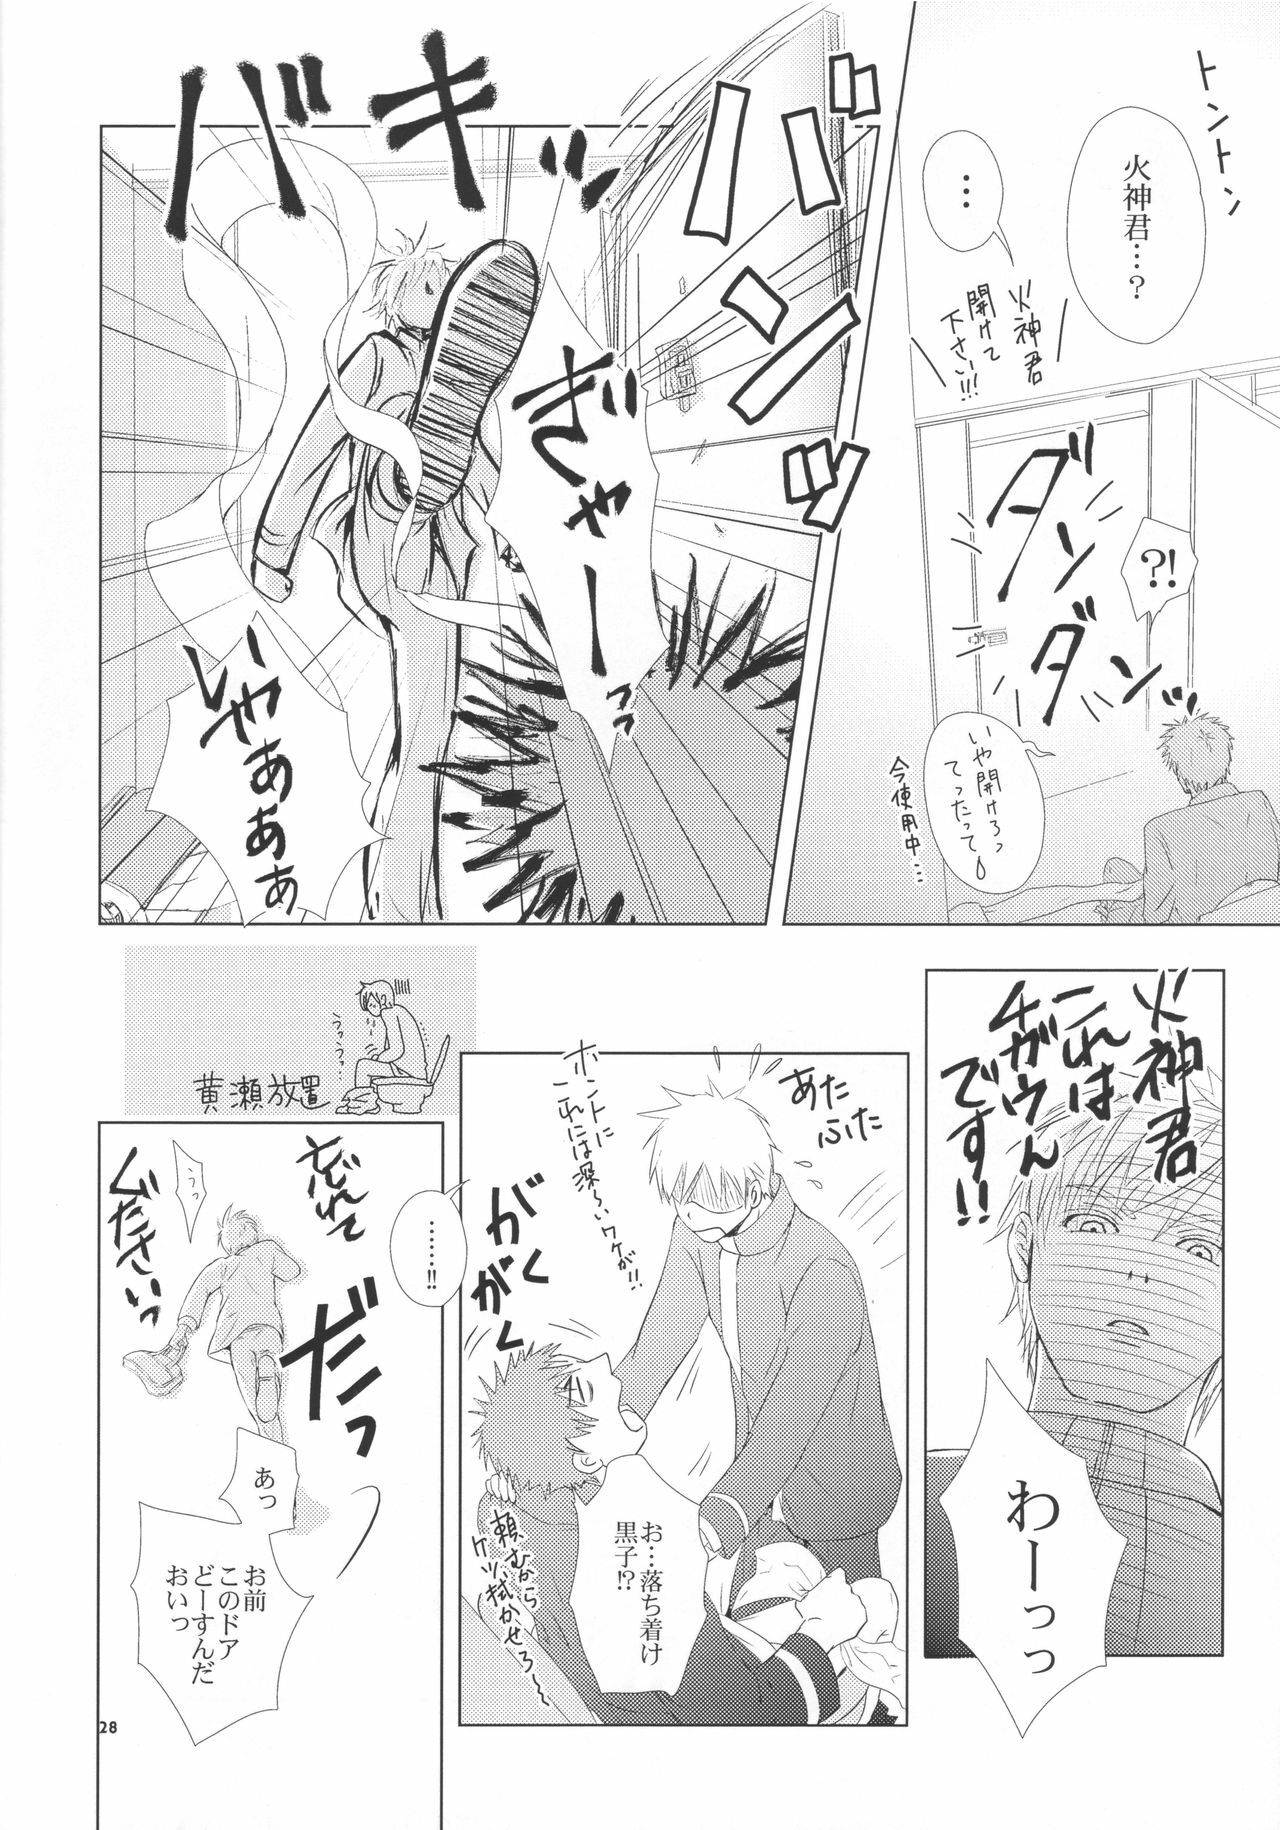 (Shadow Trickster 2) [ViViaN (JiN)] VIOLATION→FOULS (Kuroko no Basuke) page 28 full